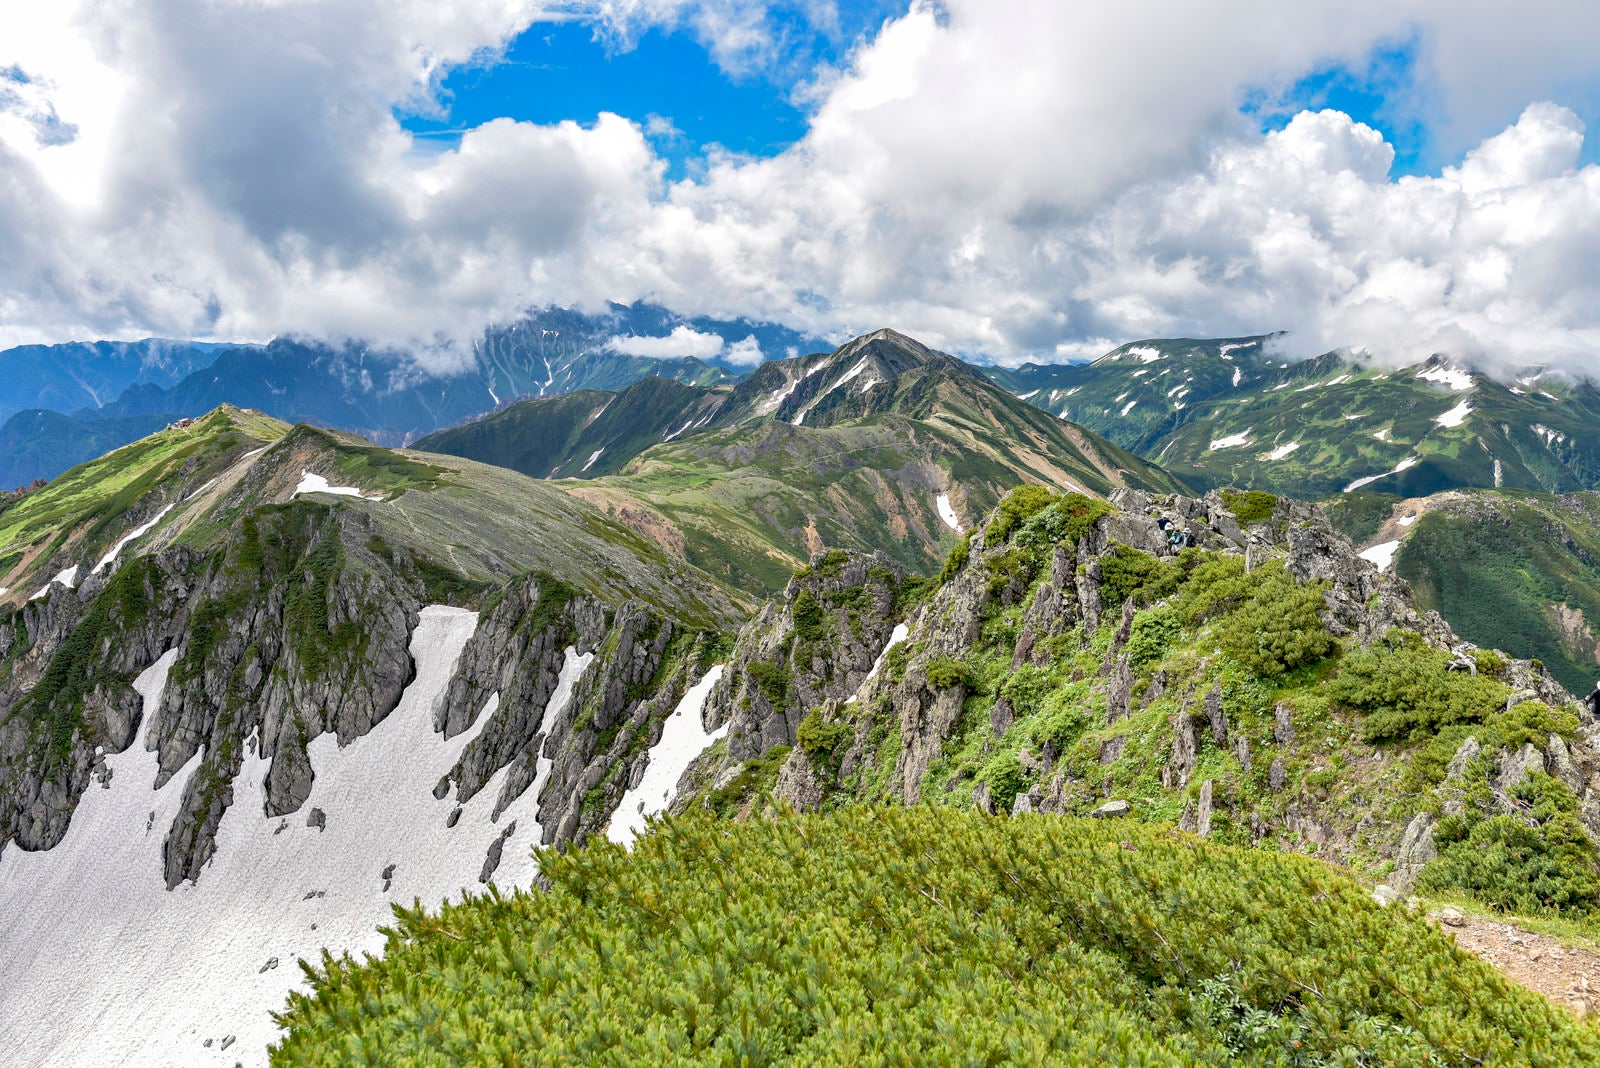 「青空と白い雲が広がる水晶岳稜線からの景色」の写真